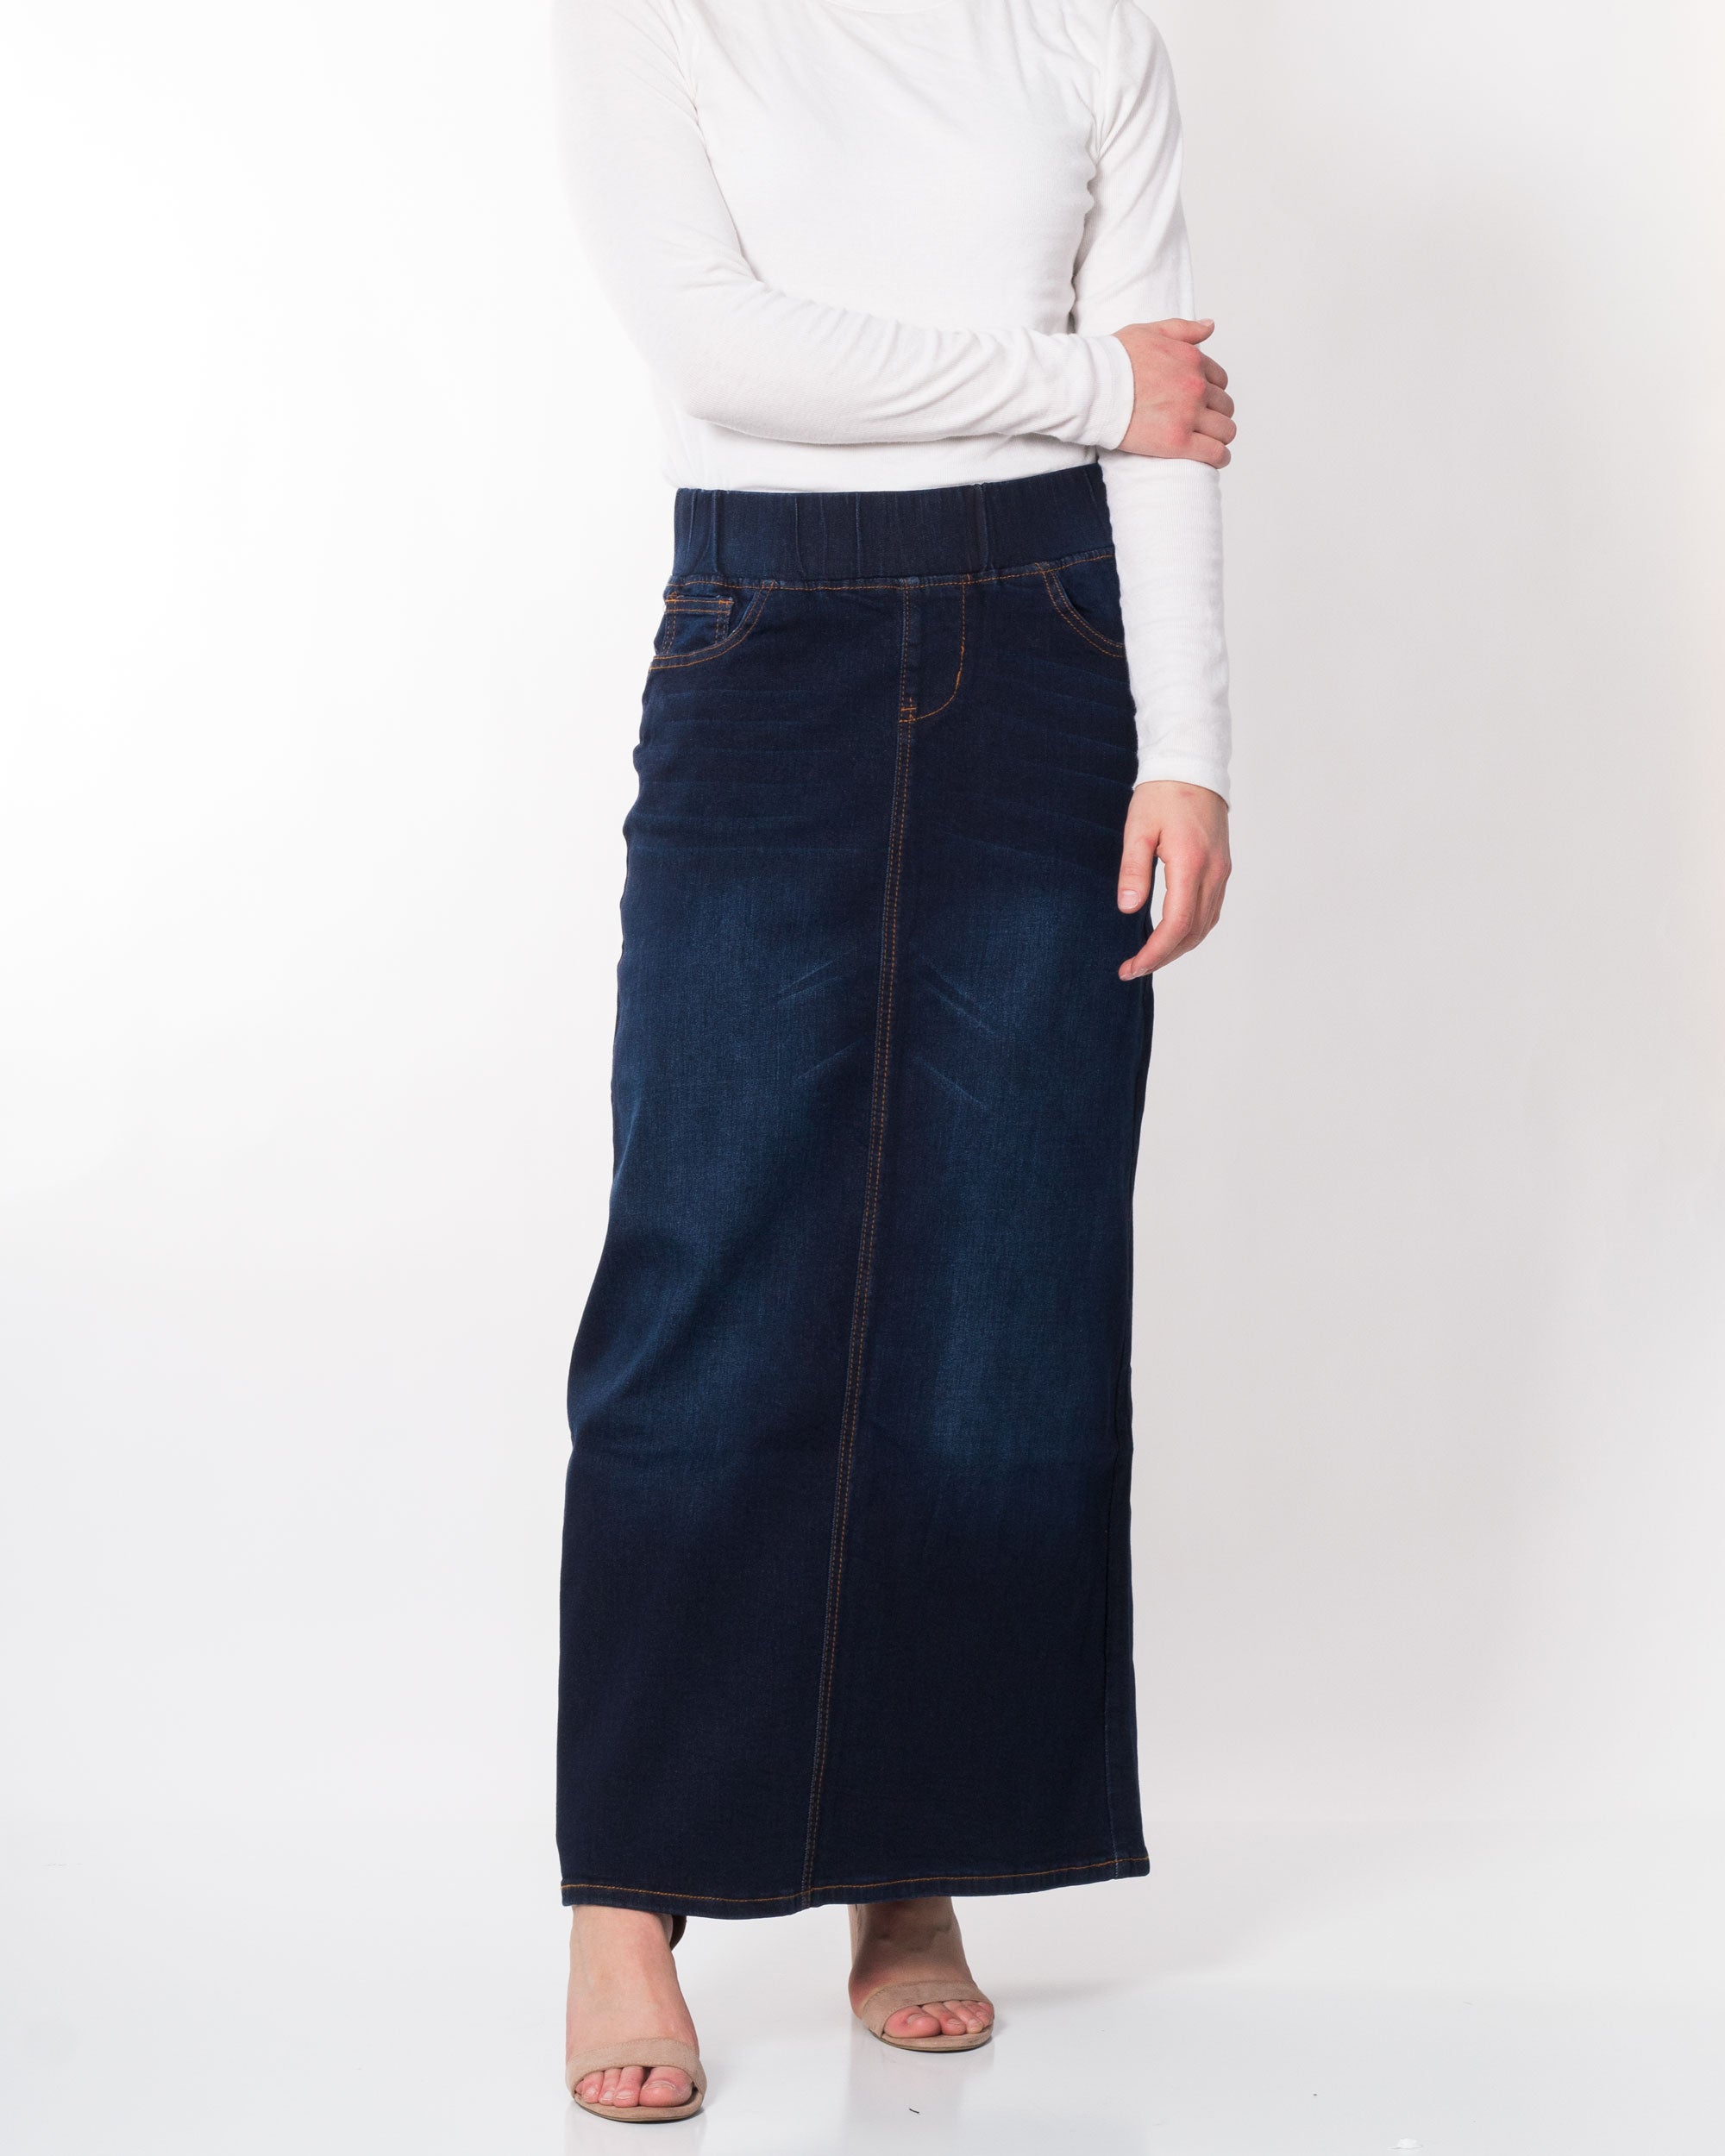 Ava's Maxi Denim Skirt